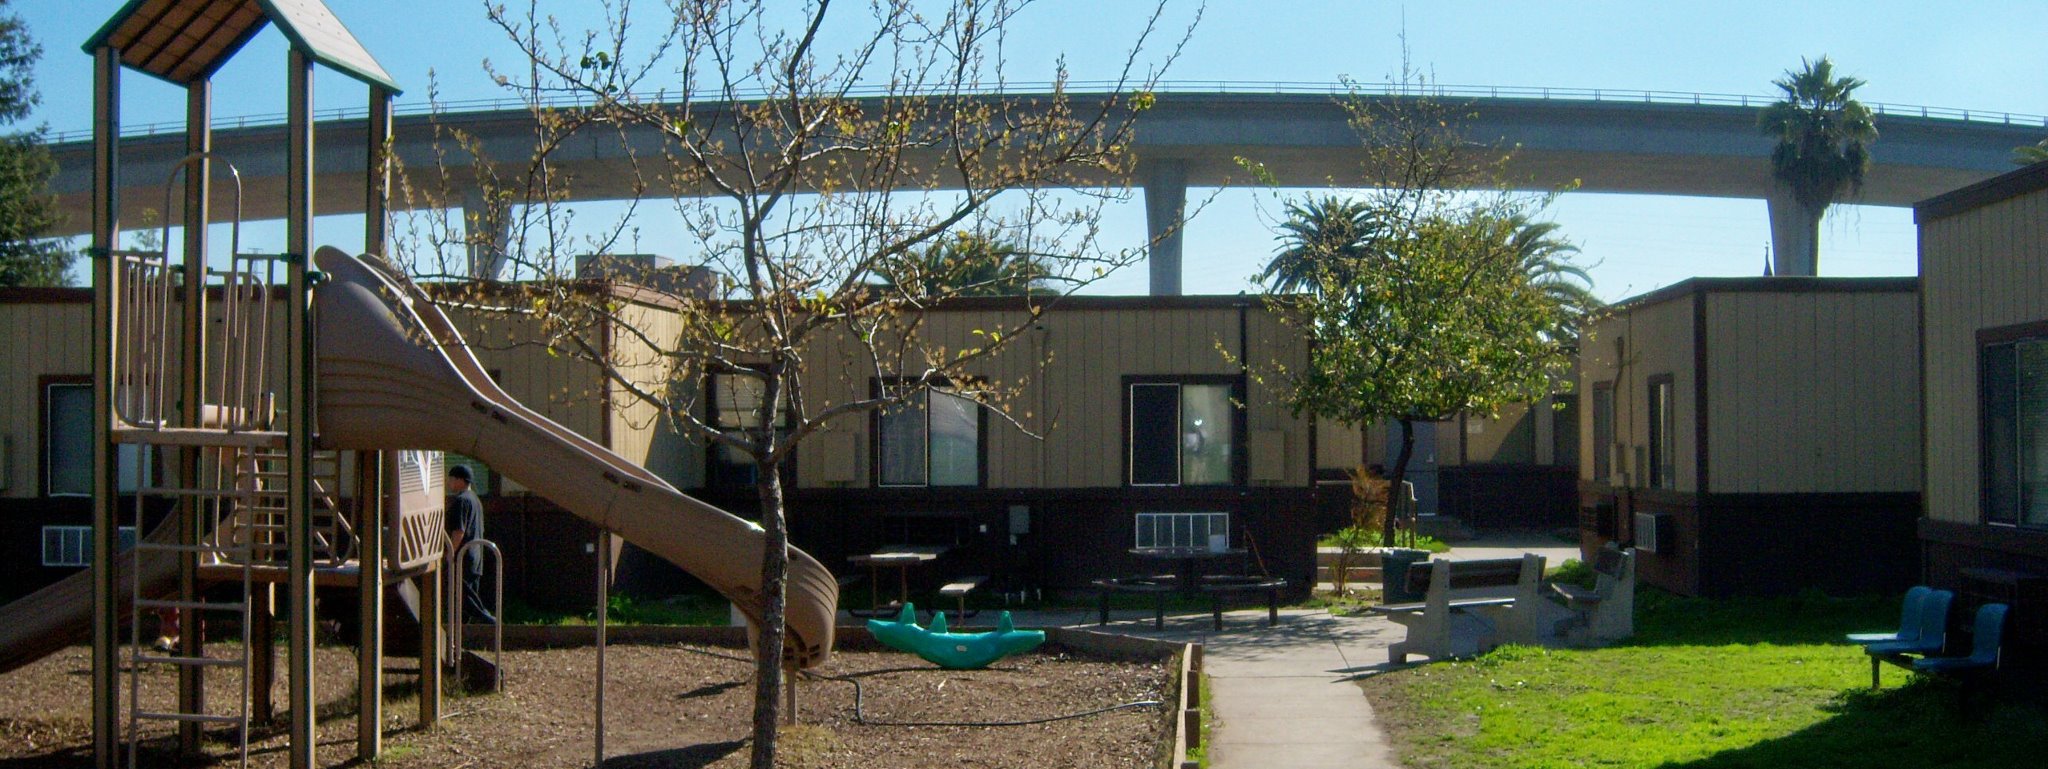 Stockton Shelter for the Homeless